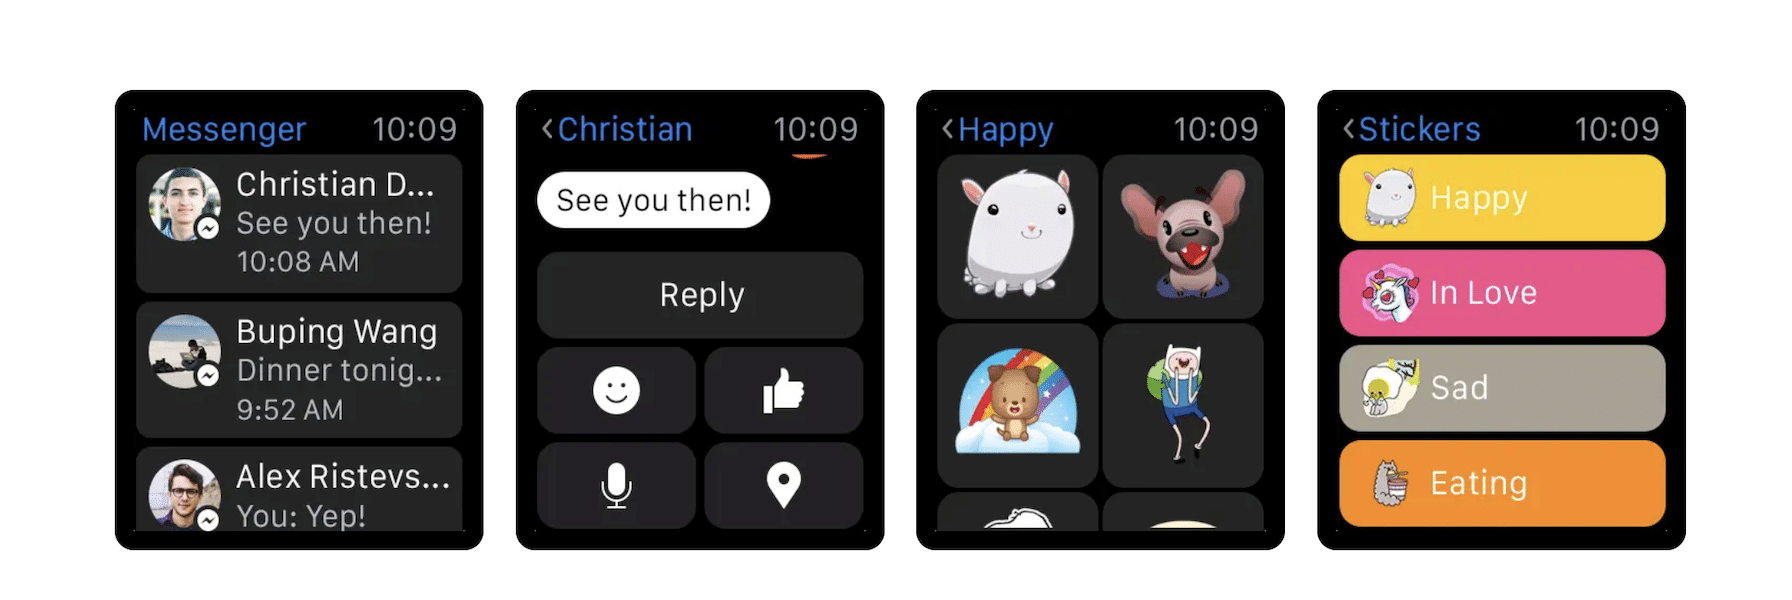 Messenger Apple Watch app